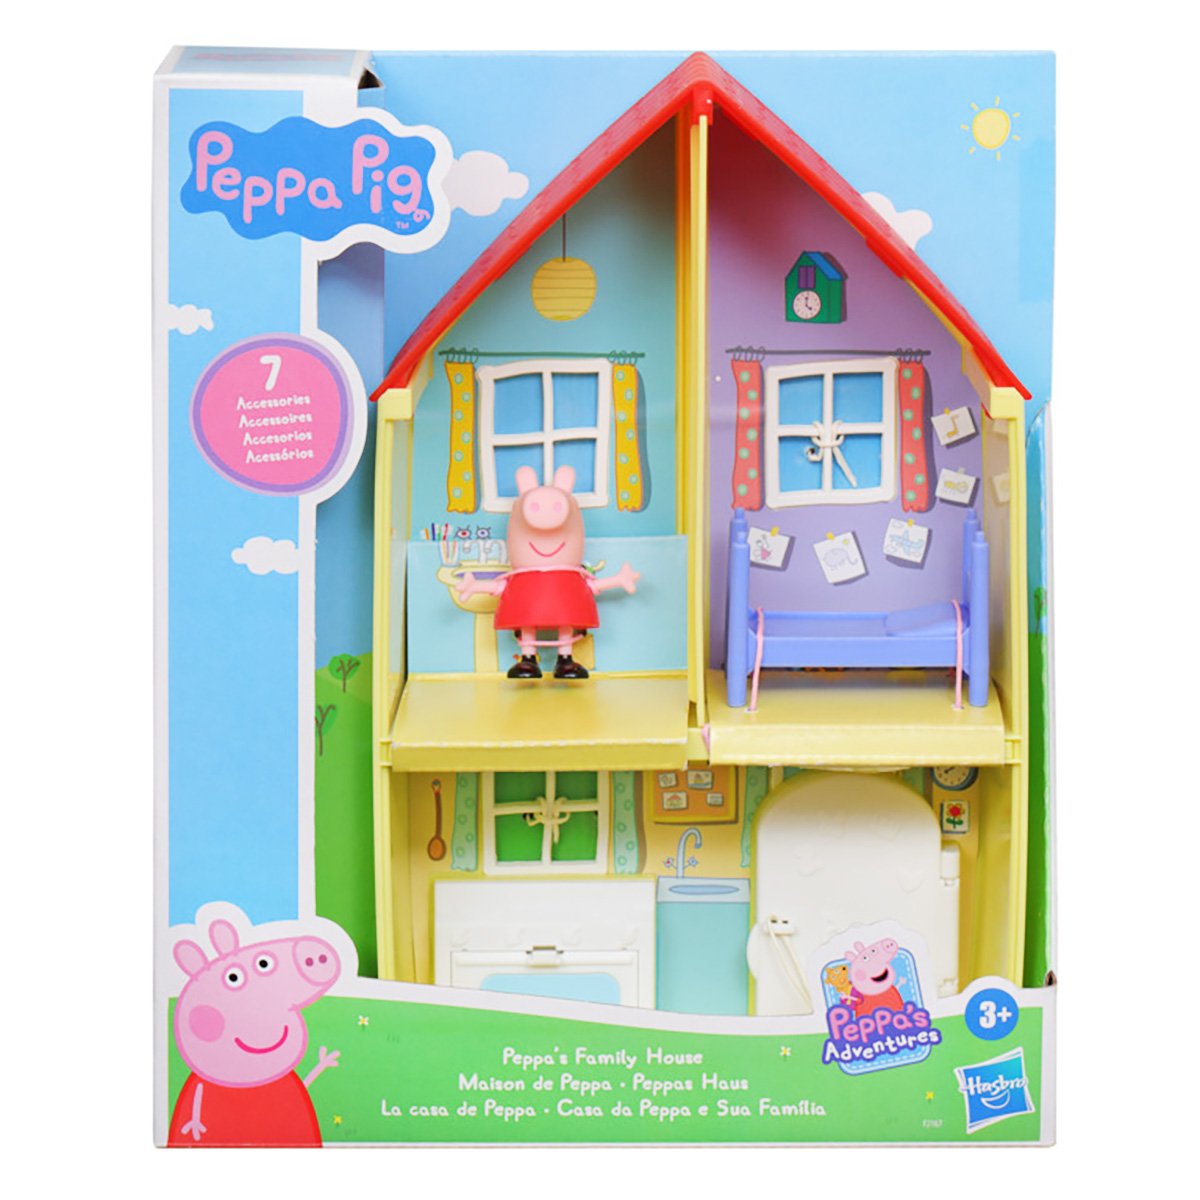 Casa de familie a lui Peppa Pig, 7 accesorii, F2167